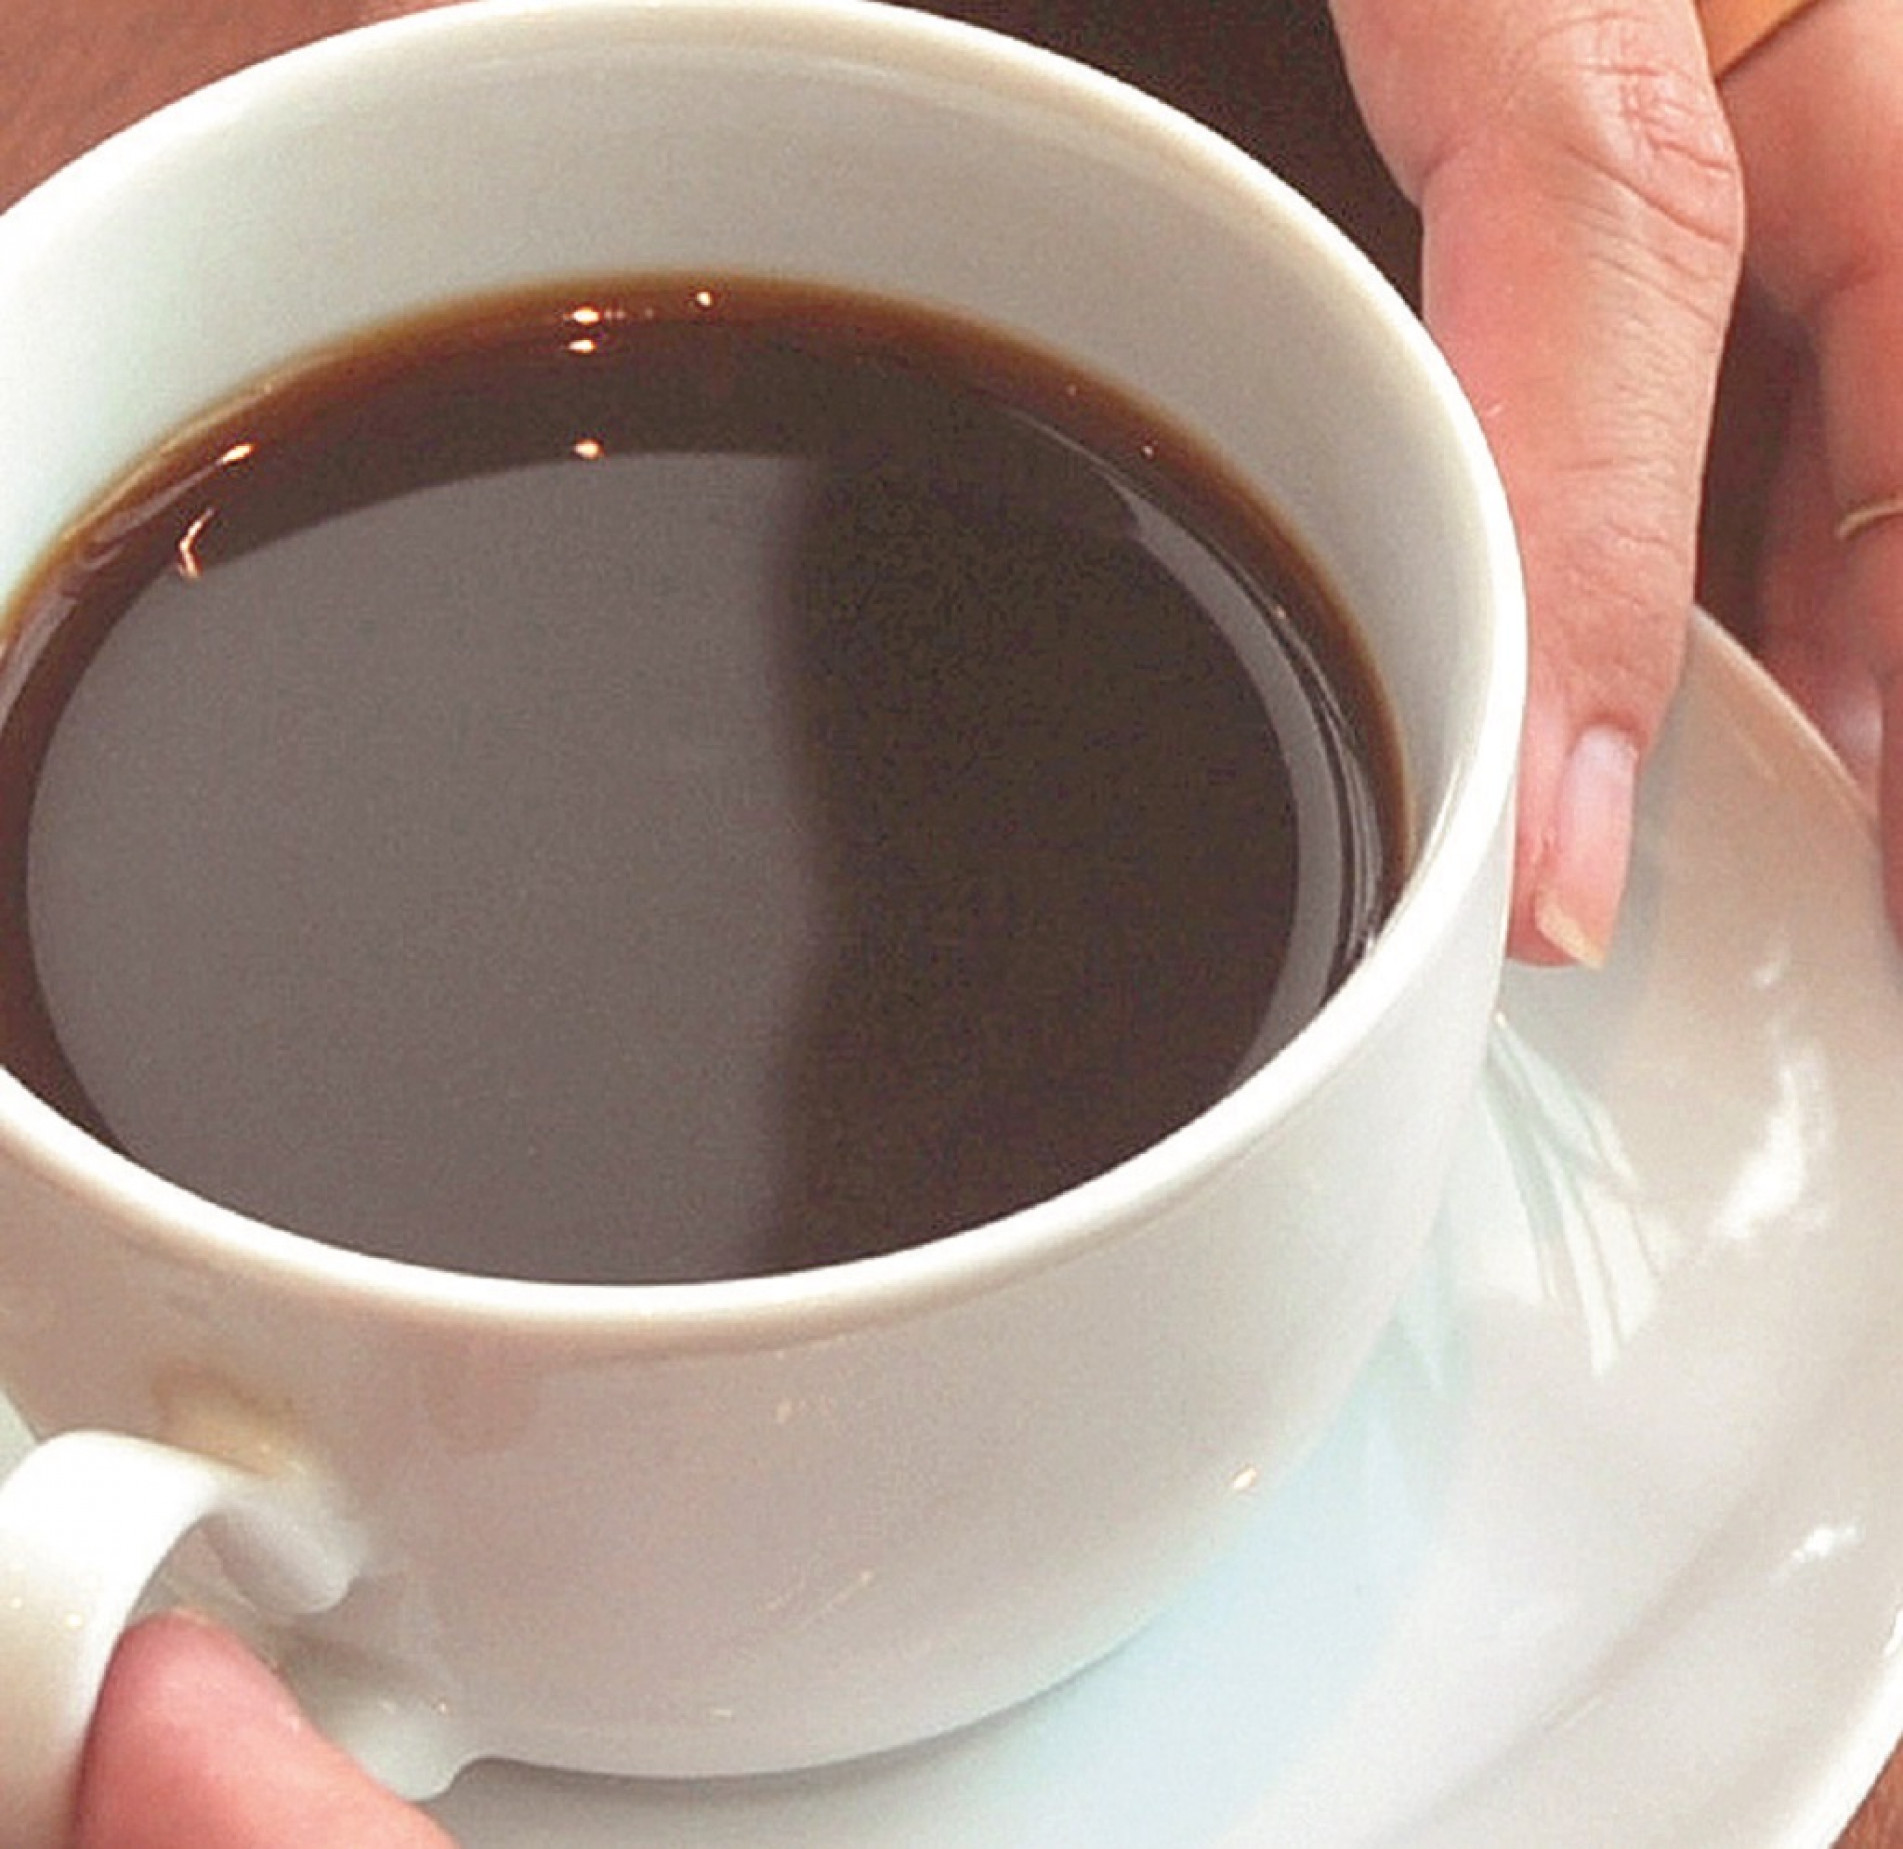 Prefeitura publicou edital que prevê gasto anual de R$ 103.920 com o serviço de café